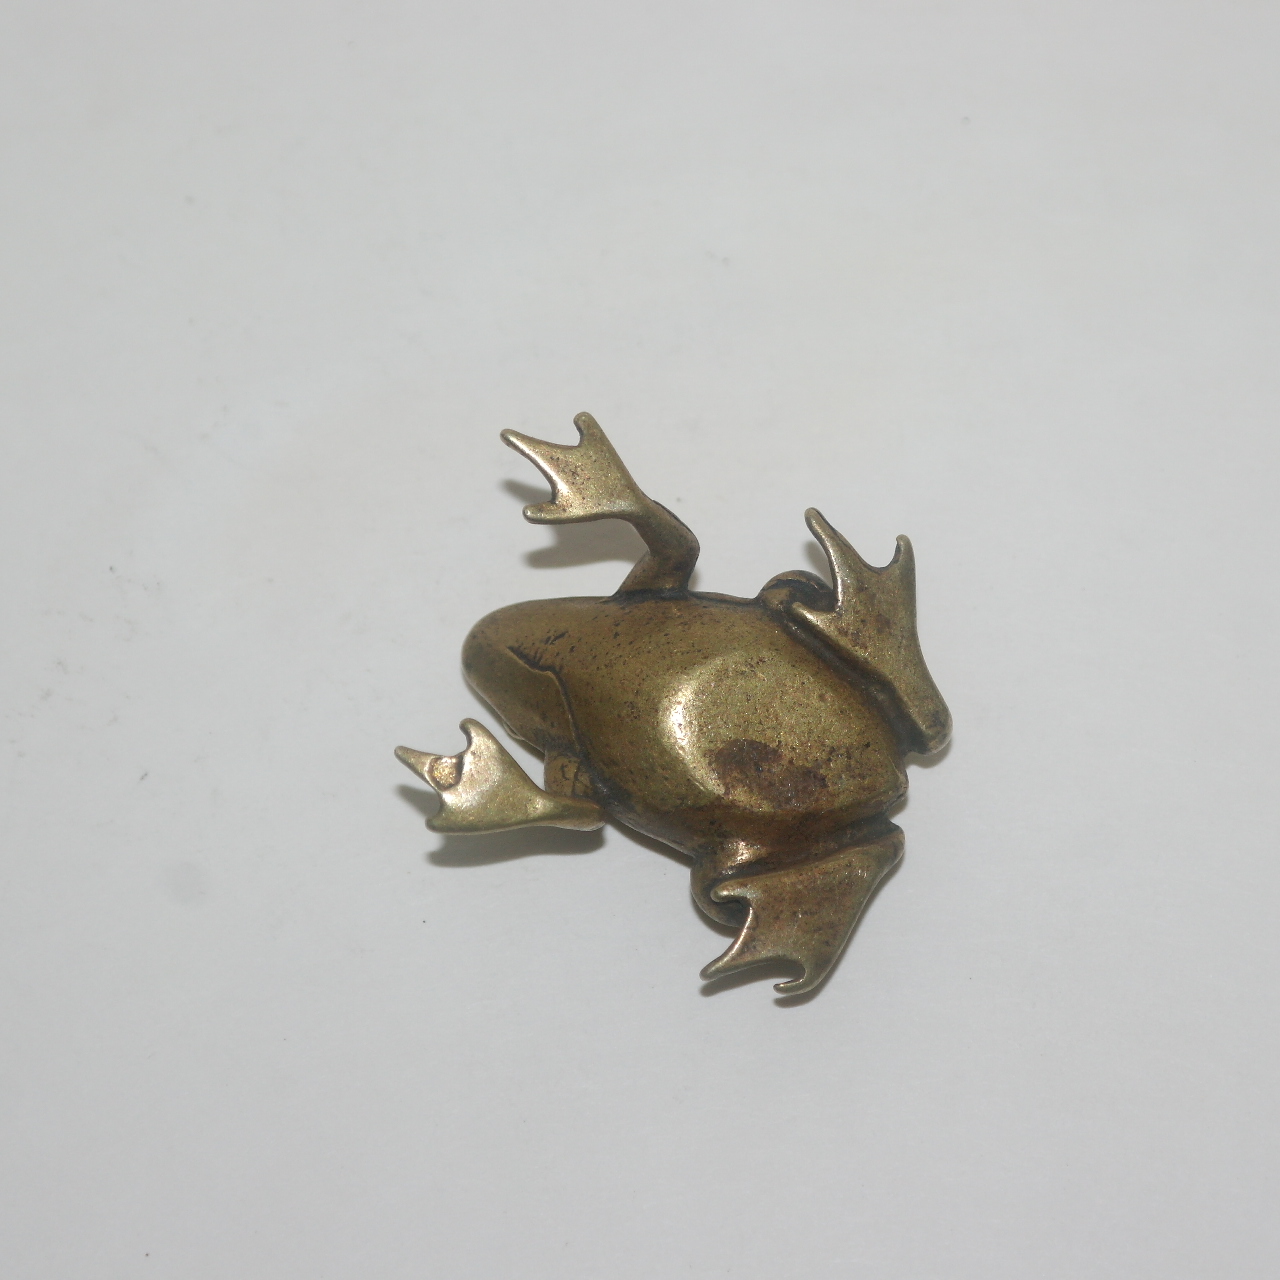 청동으로된 개구리 조각상